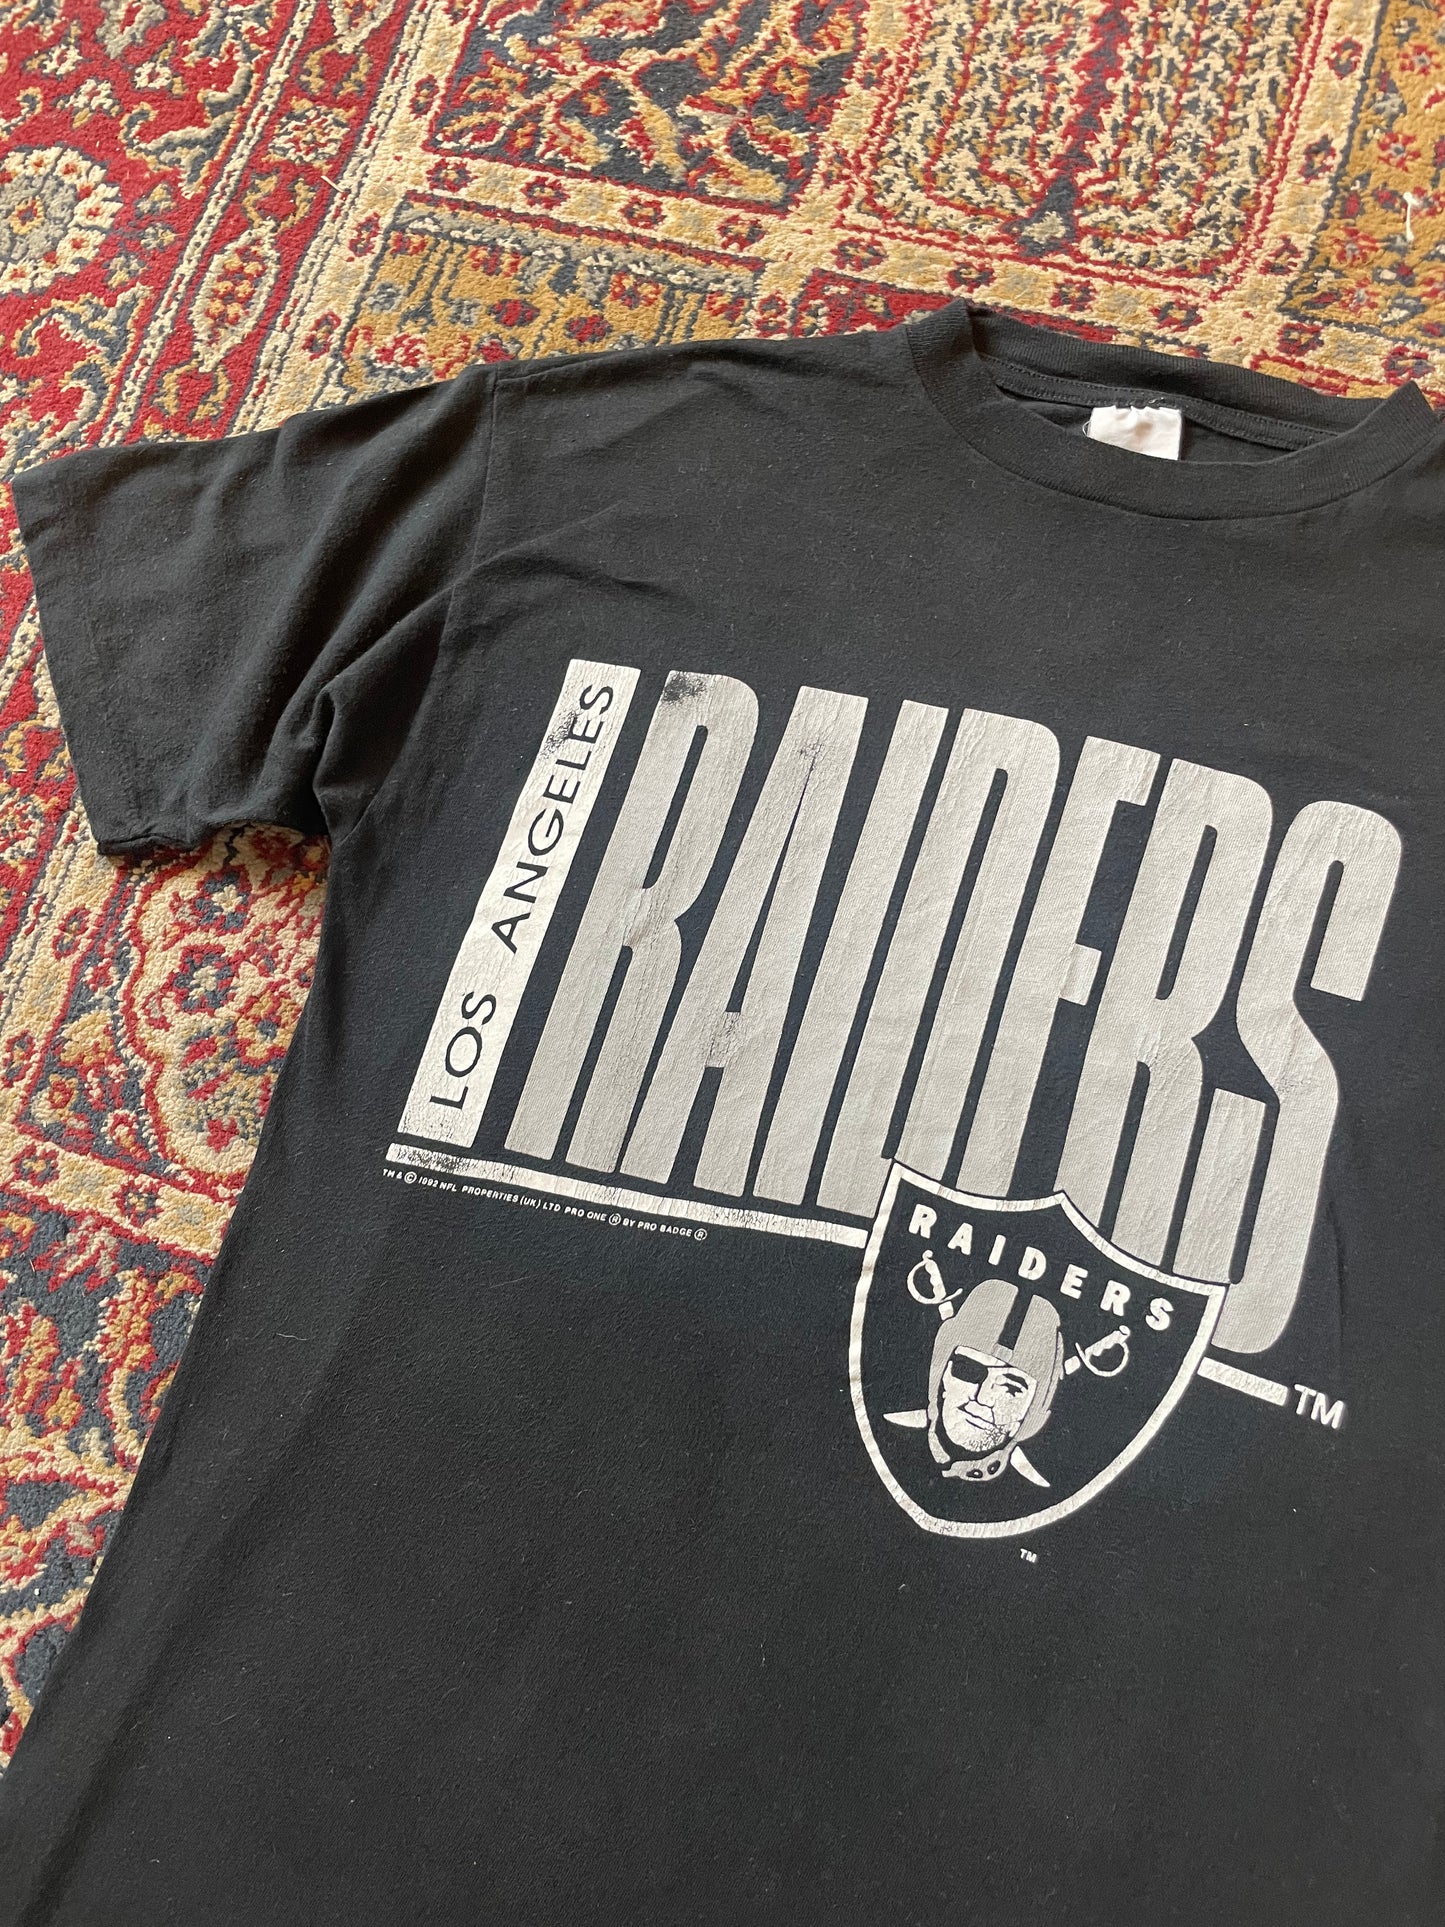 1992 LA Raiders Pro One Single Stitch shirt (M)